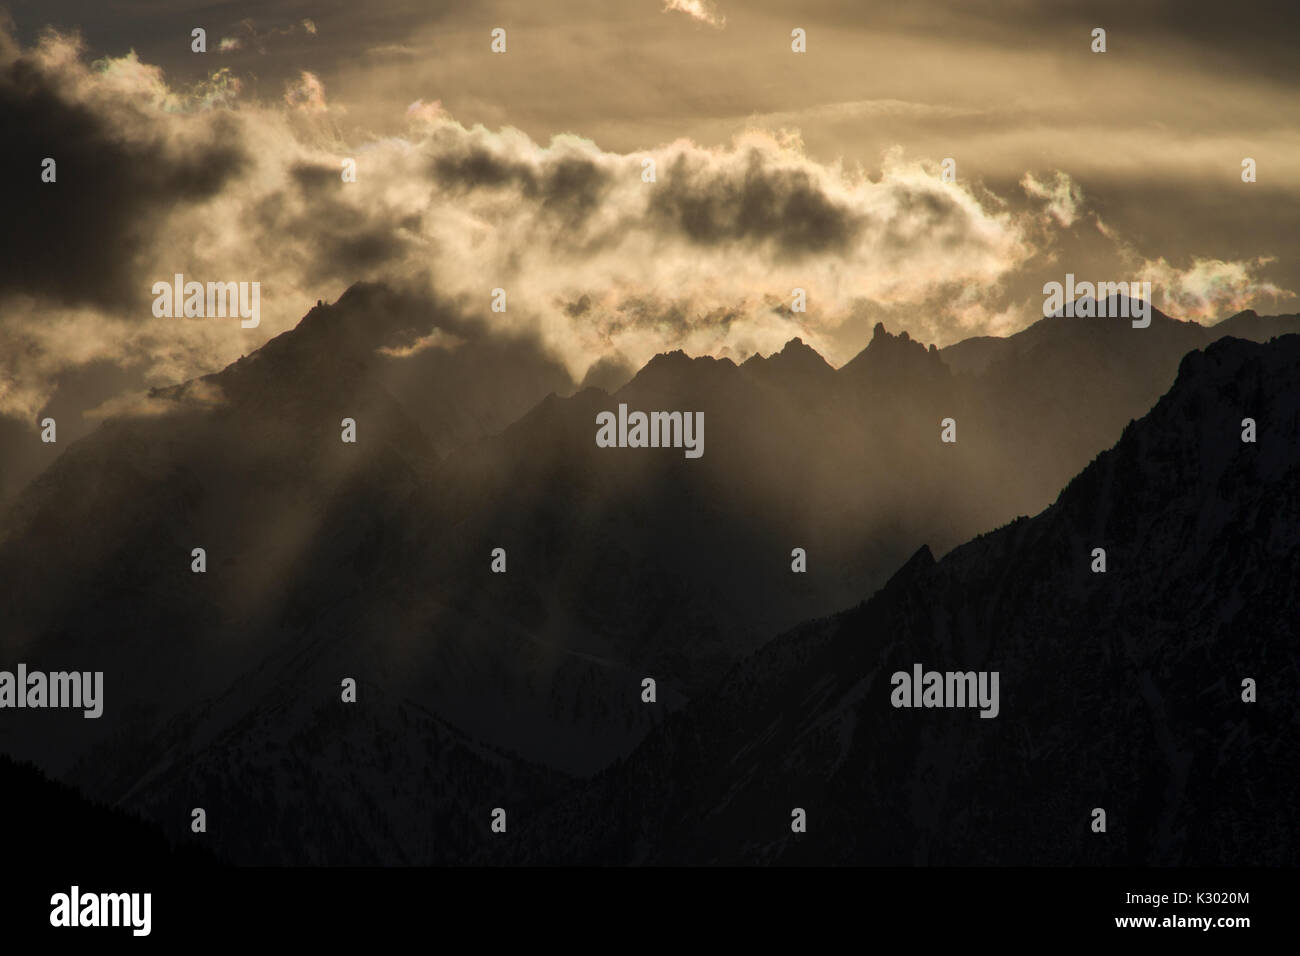 Plus de coucher de soleil spectaculaire alpes Suisse, Valais Valais, Suisse. Banque D'Images